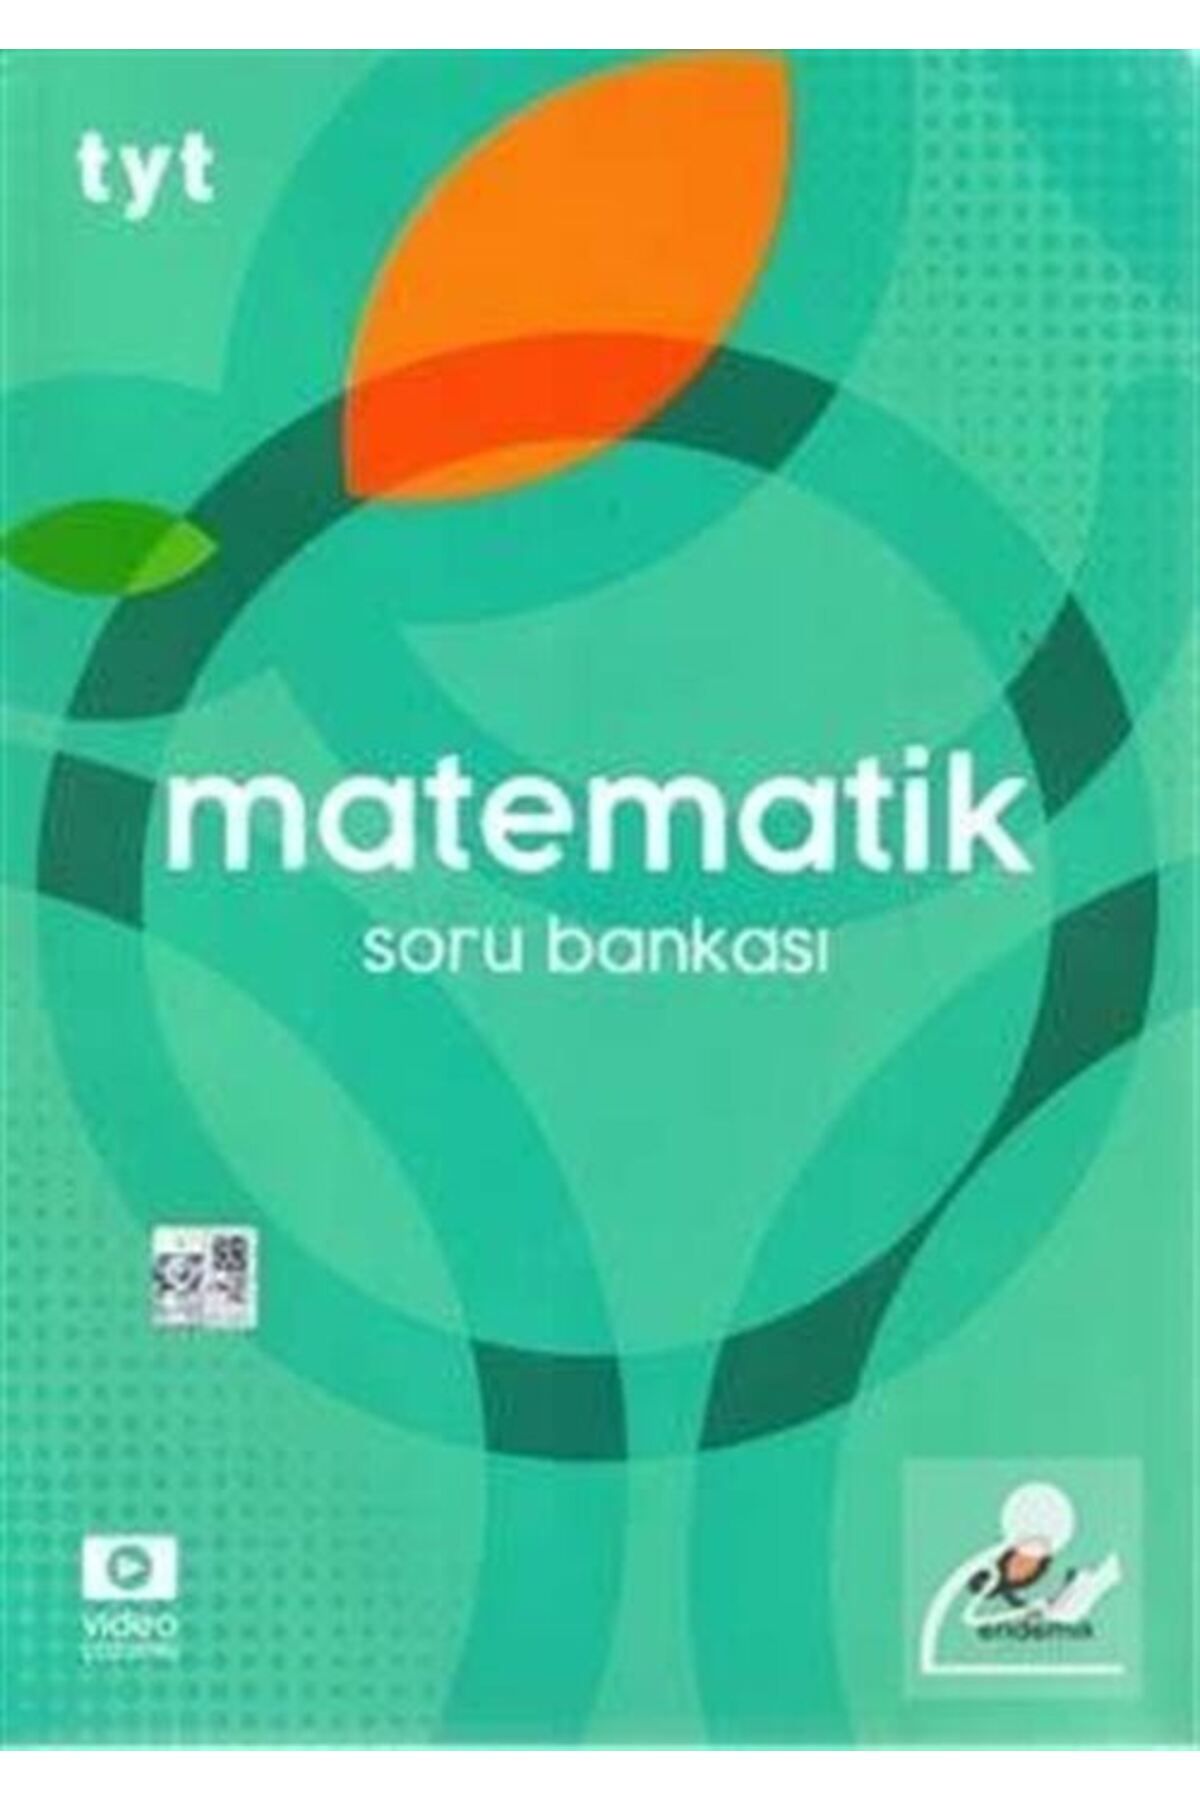 Endemik Yayınları Tyt Matematik Soru Bankası